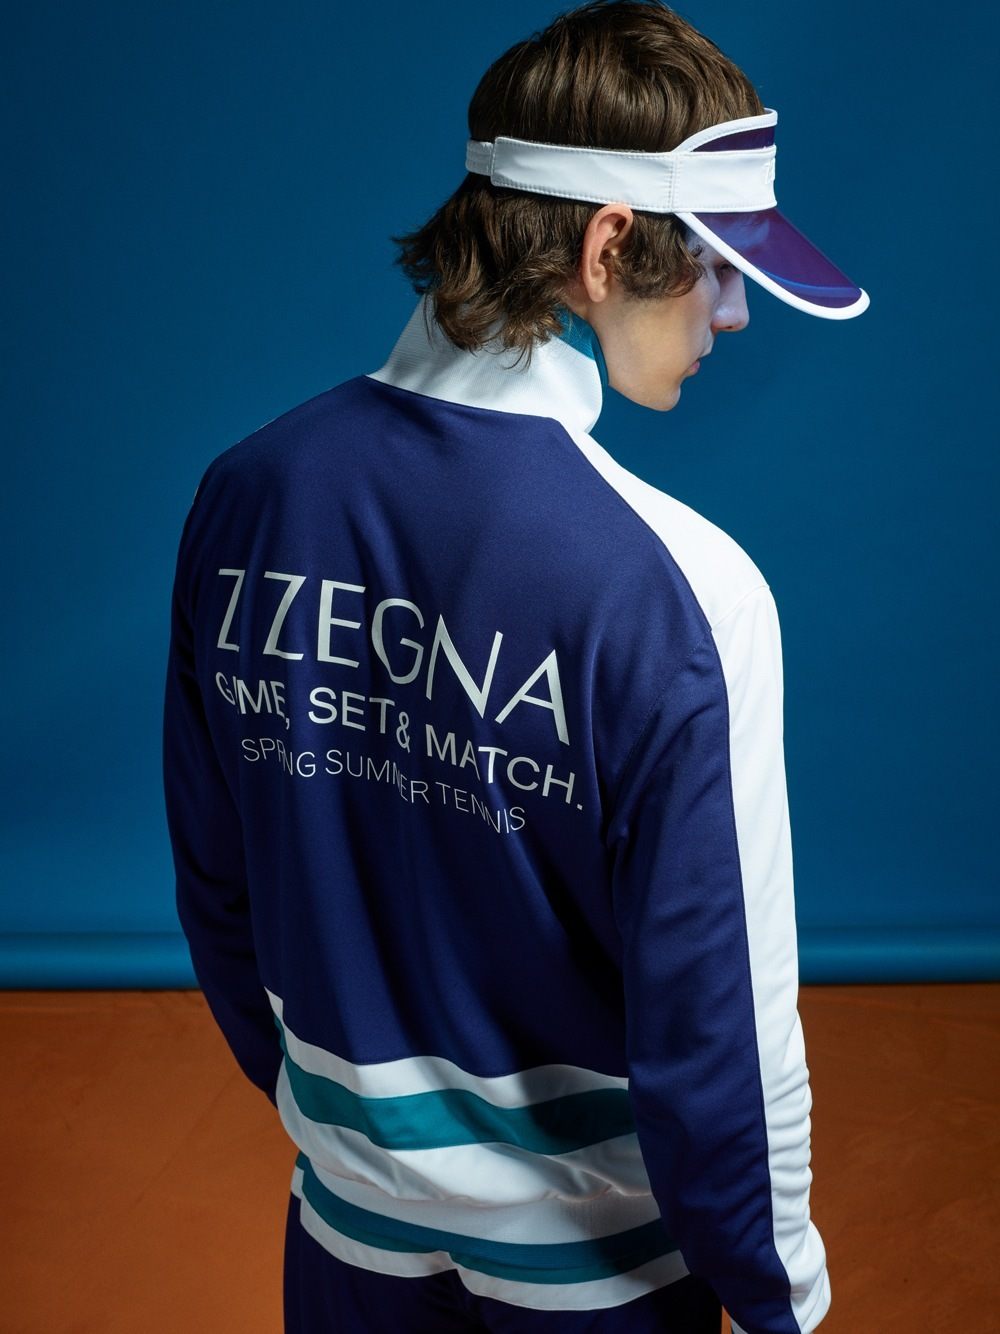 imagen 59 de Los hombres Z Zegna juegan al tenis.